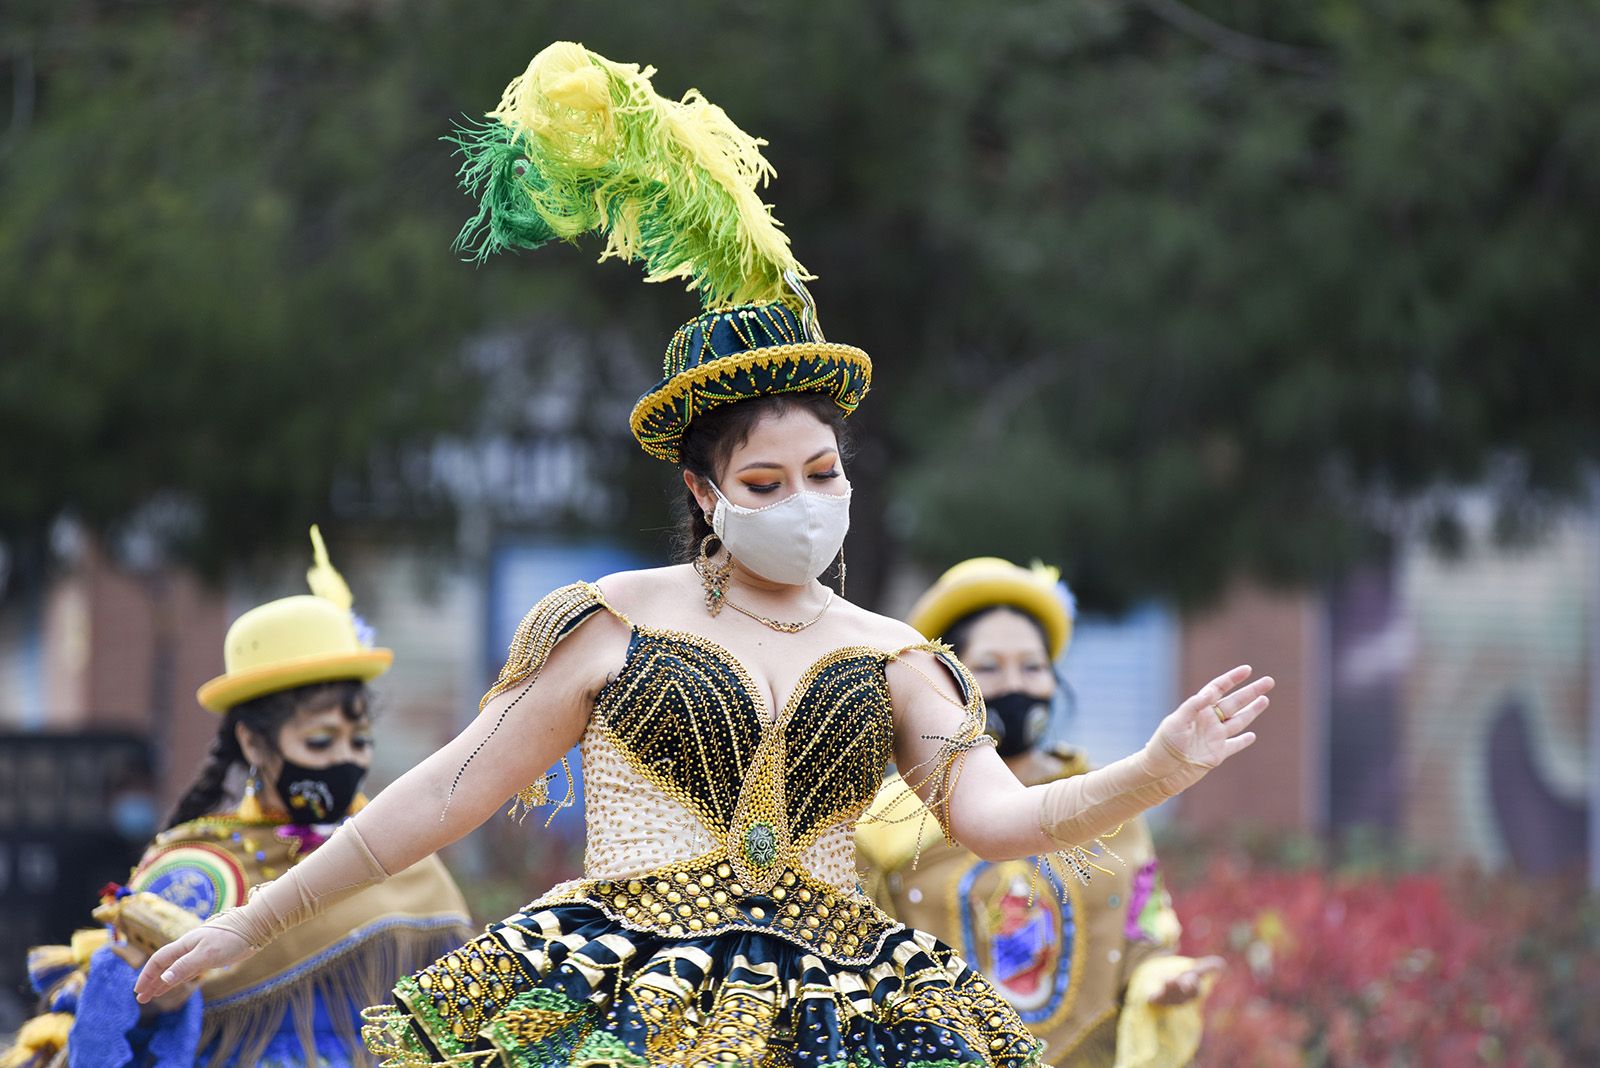 Taller de danses Bolivianes amb l'Associació folklòrica i cultural caporales La Fraternidad. Comitè 8M Sant Cugat. Foto: Bernat Millet